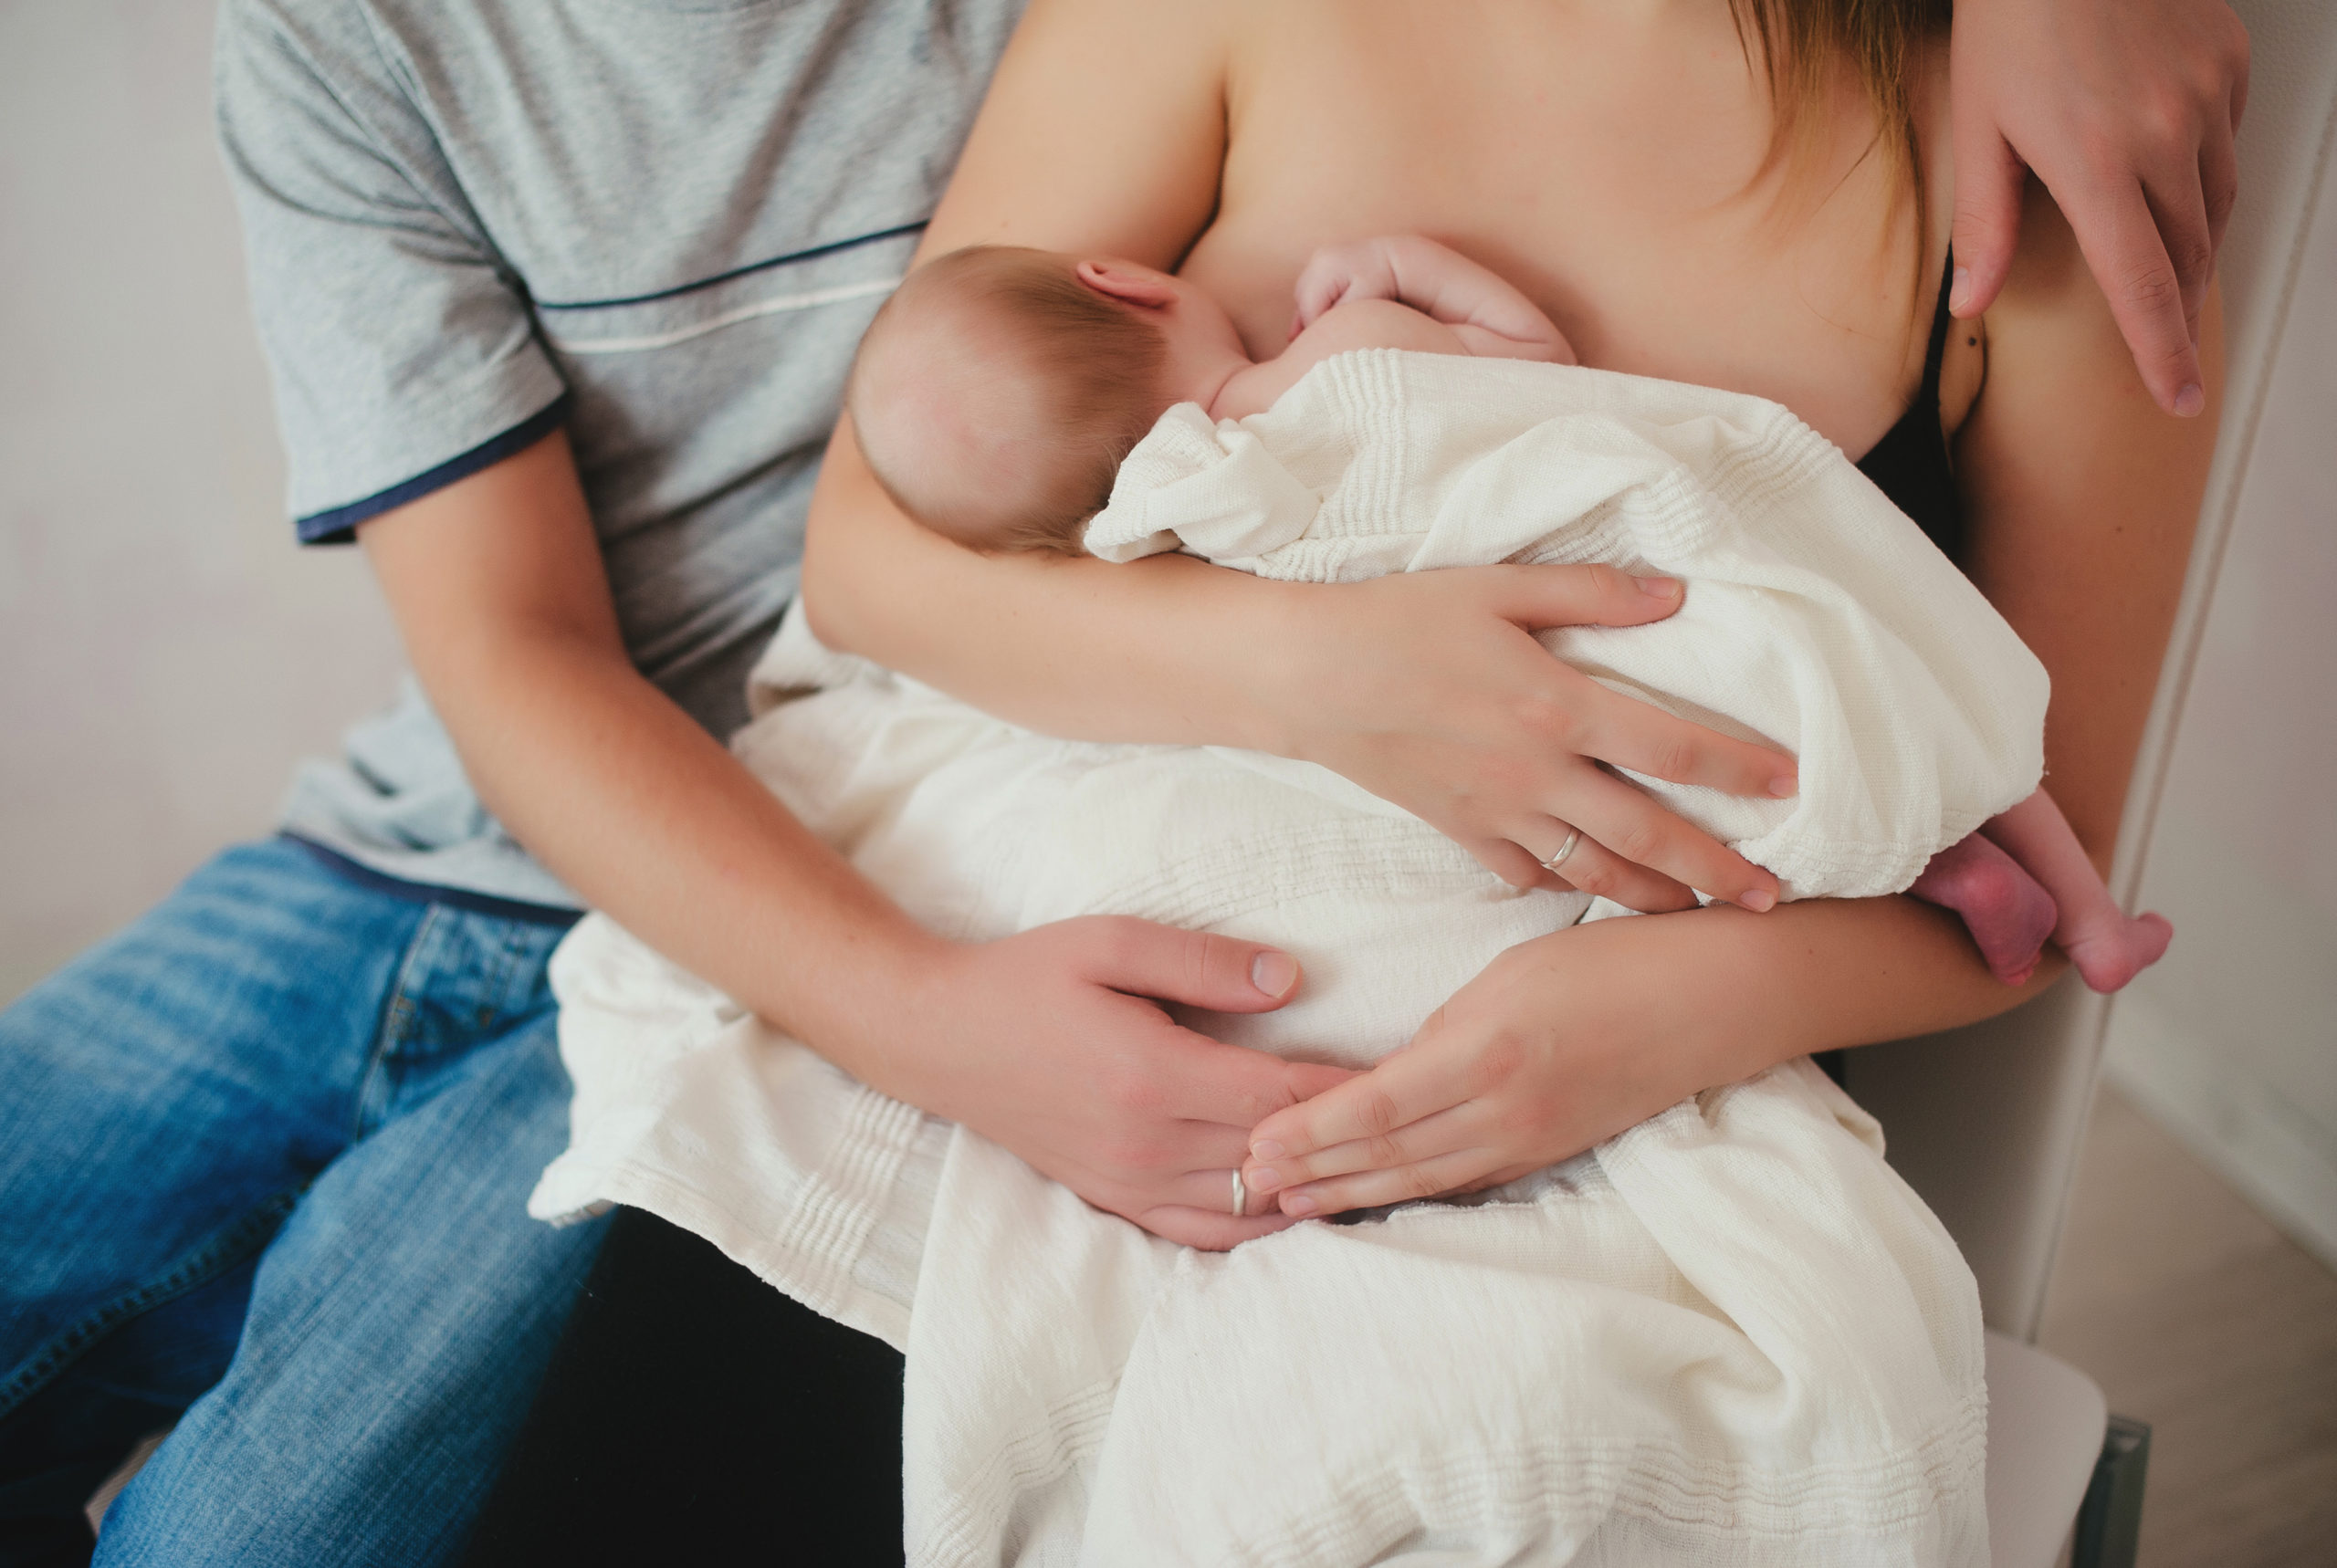 13 Breastfeeding Must Haves to Help Make Nursing & Pumping Easier